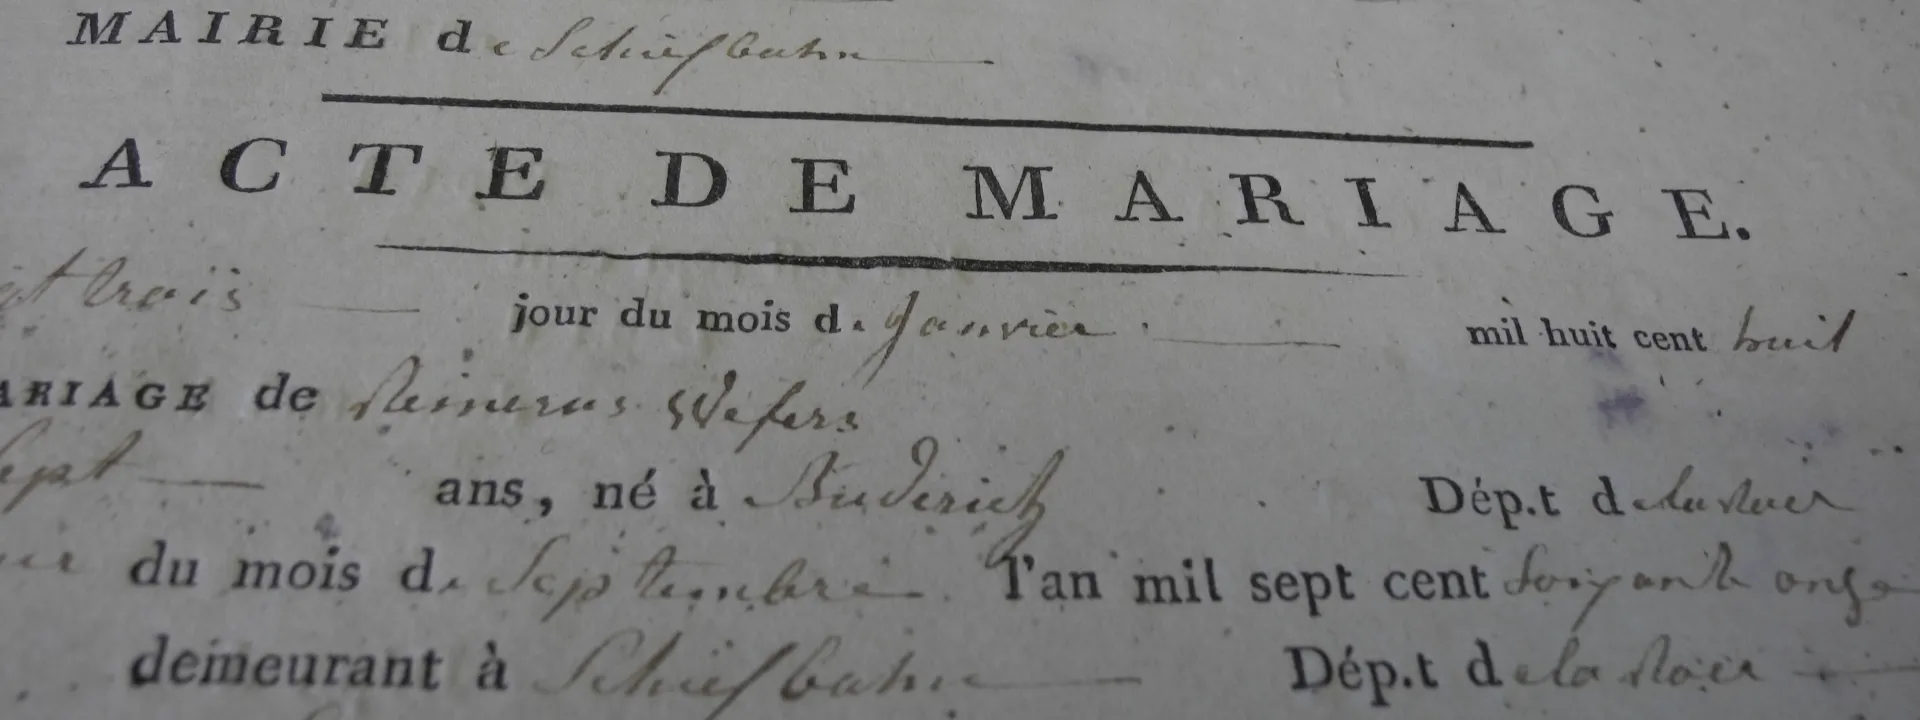 Urkunde in französischer Sprache aus einem Personenstandsregister